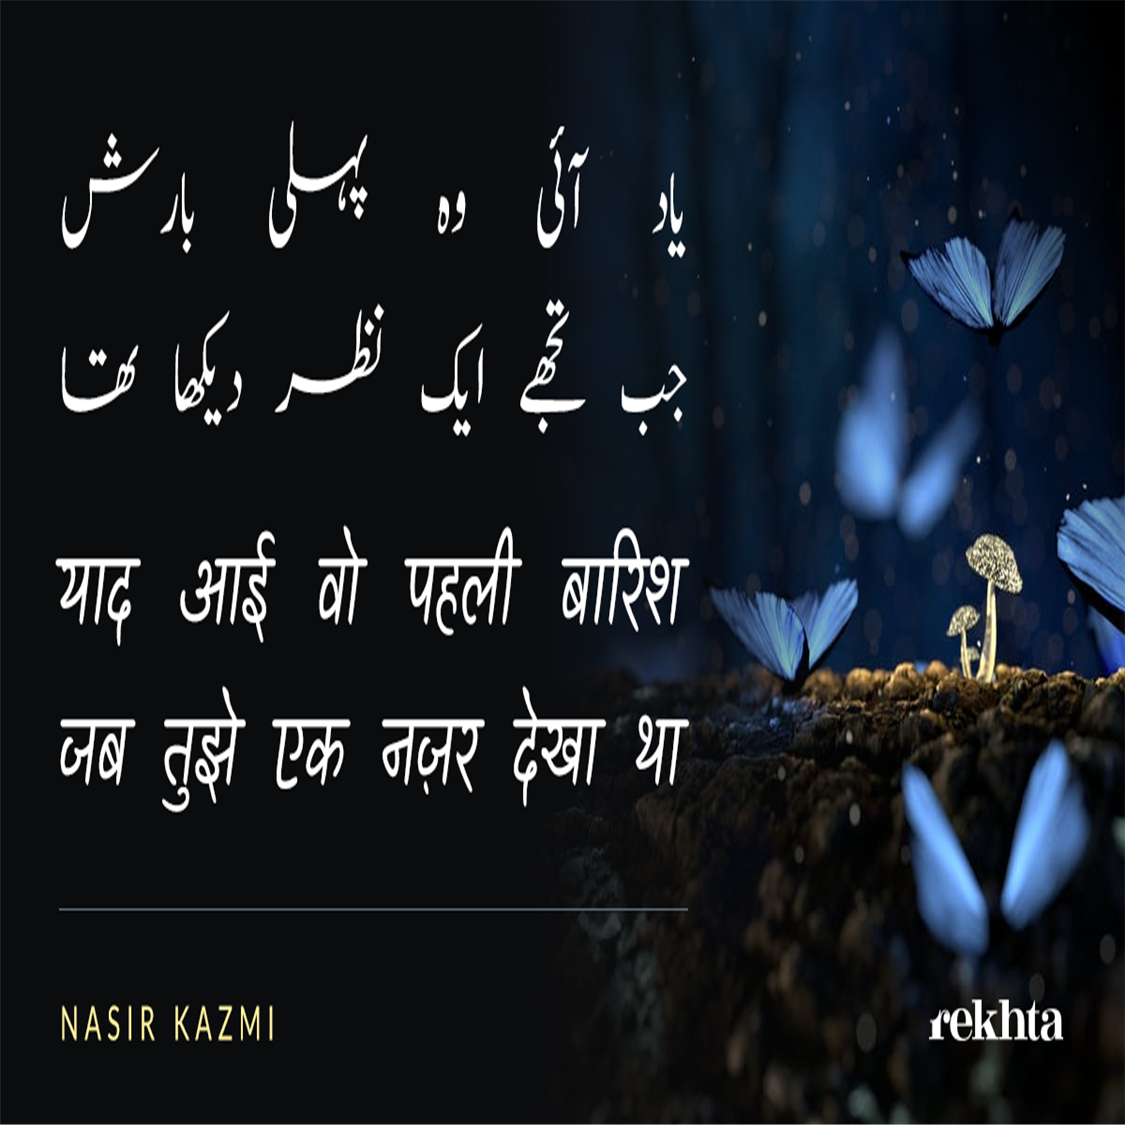 yaad aa.ii vo pahlii baarish-Nasir Kazmi